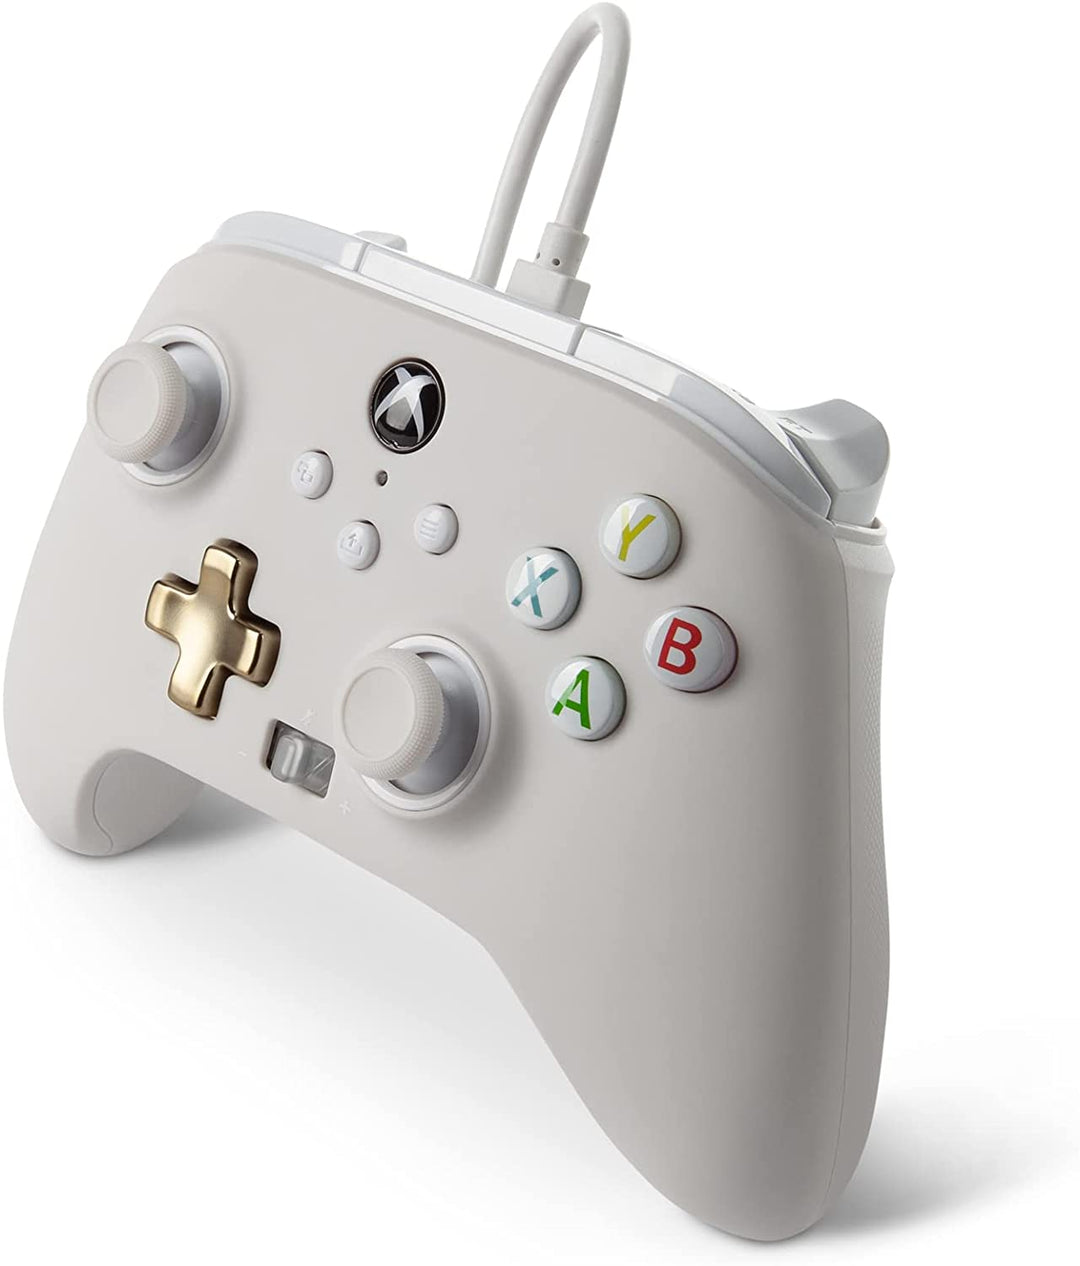 PowerA Enhanced Wired Controller für Xbox – Mist, Weiß, Gamepad, kabelgebundener Videoga